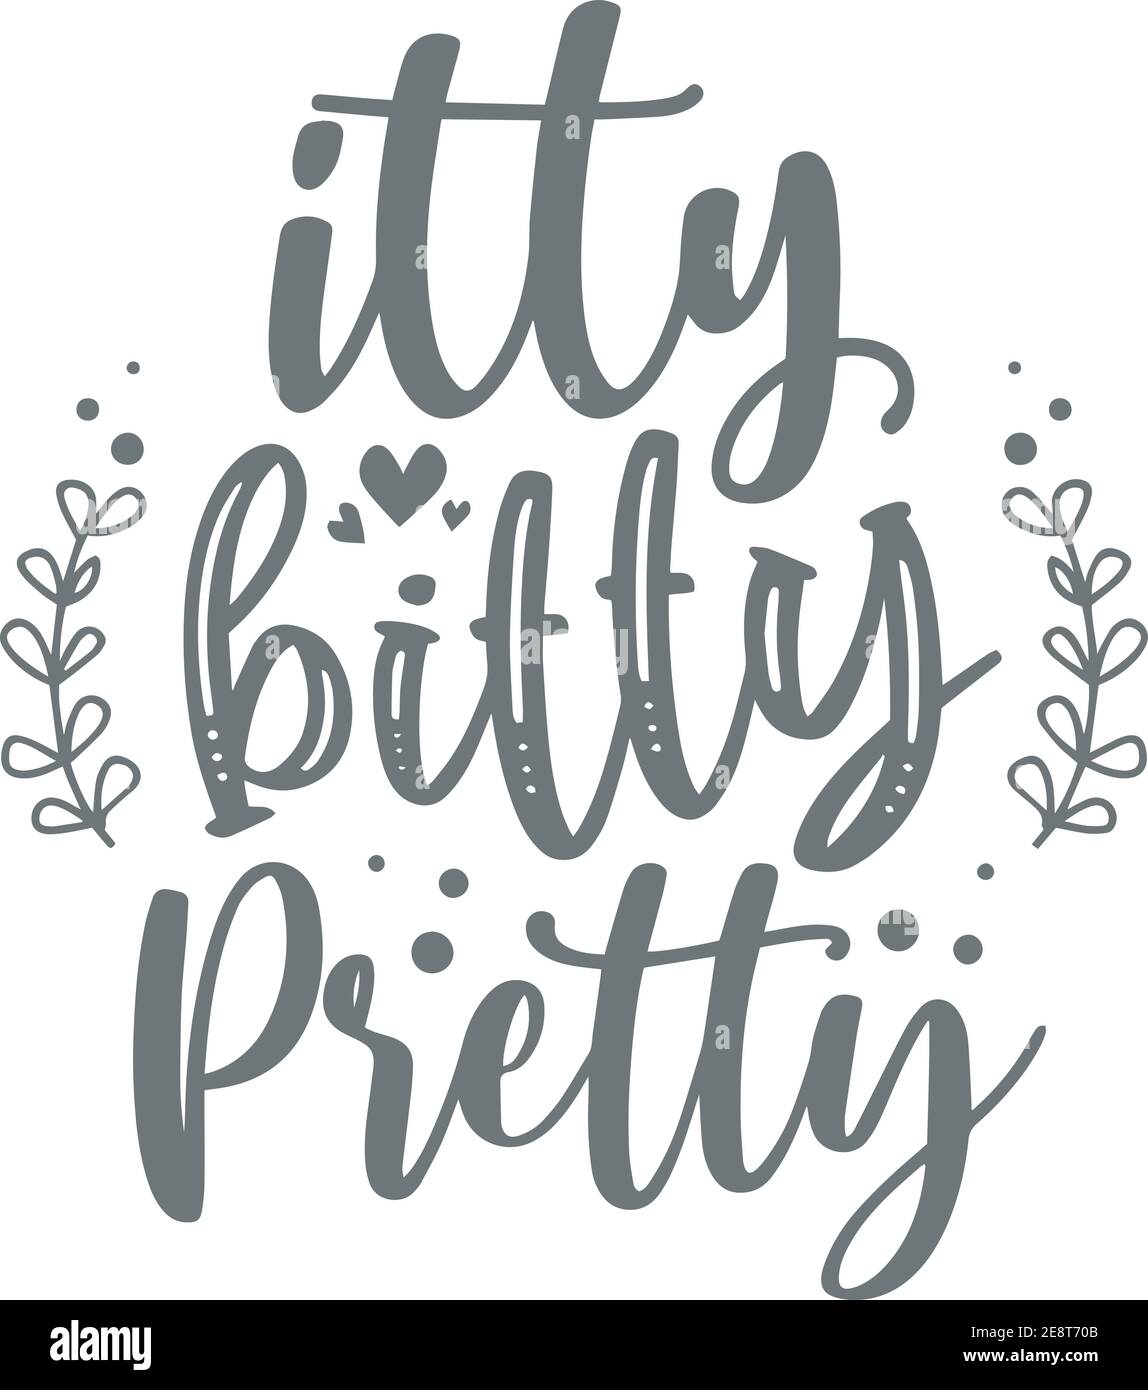 Itty bitty and pretty